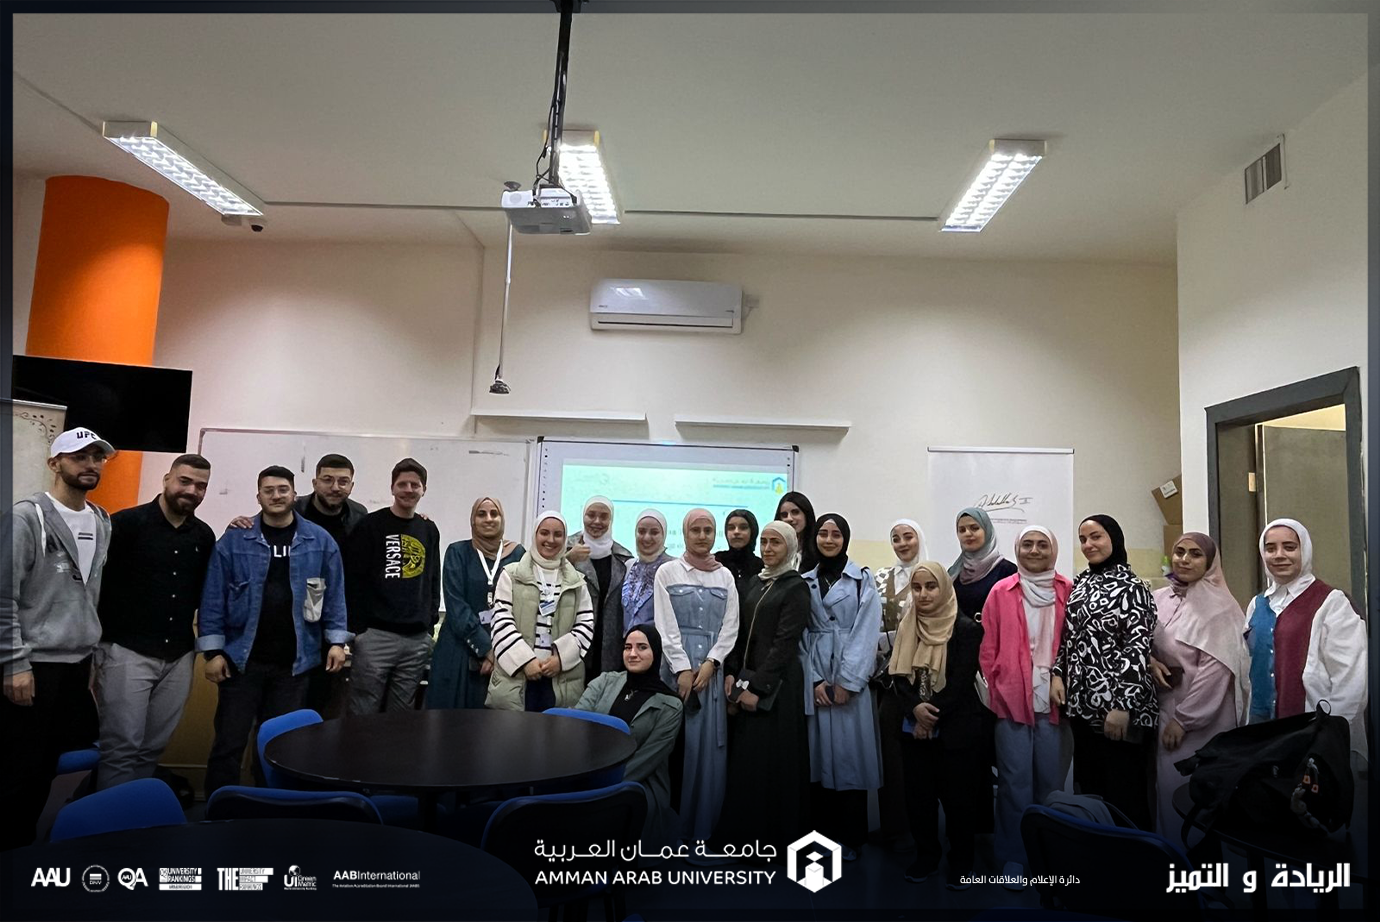 ورشة علمية لطلبة صيدلة عمان العربية بعنوان "الهندسة الوراثية"1